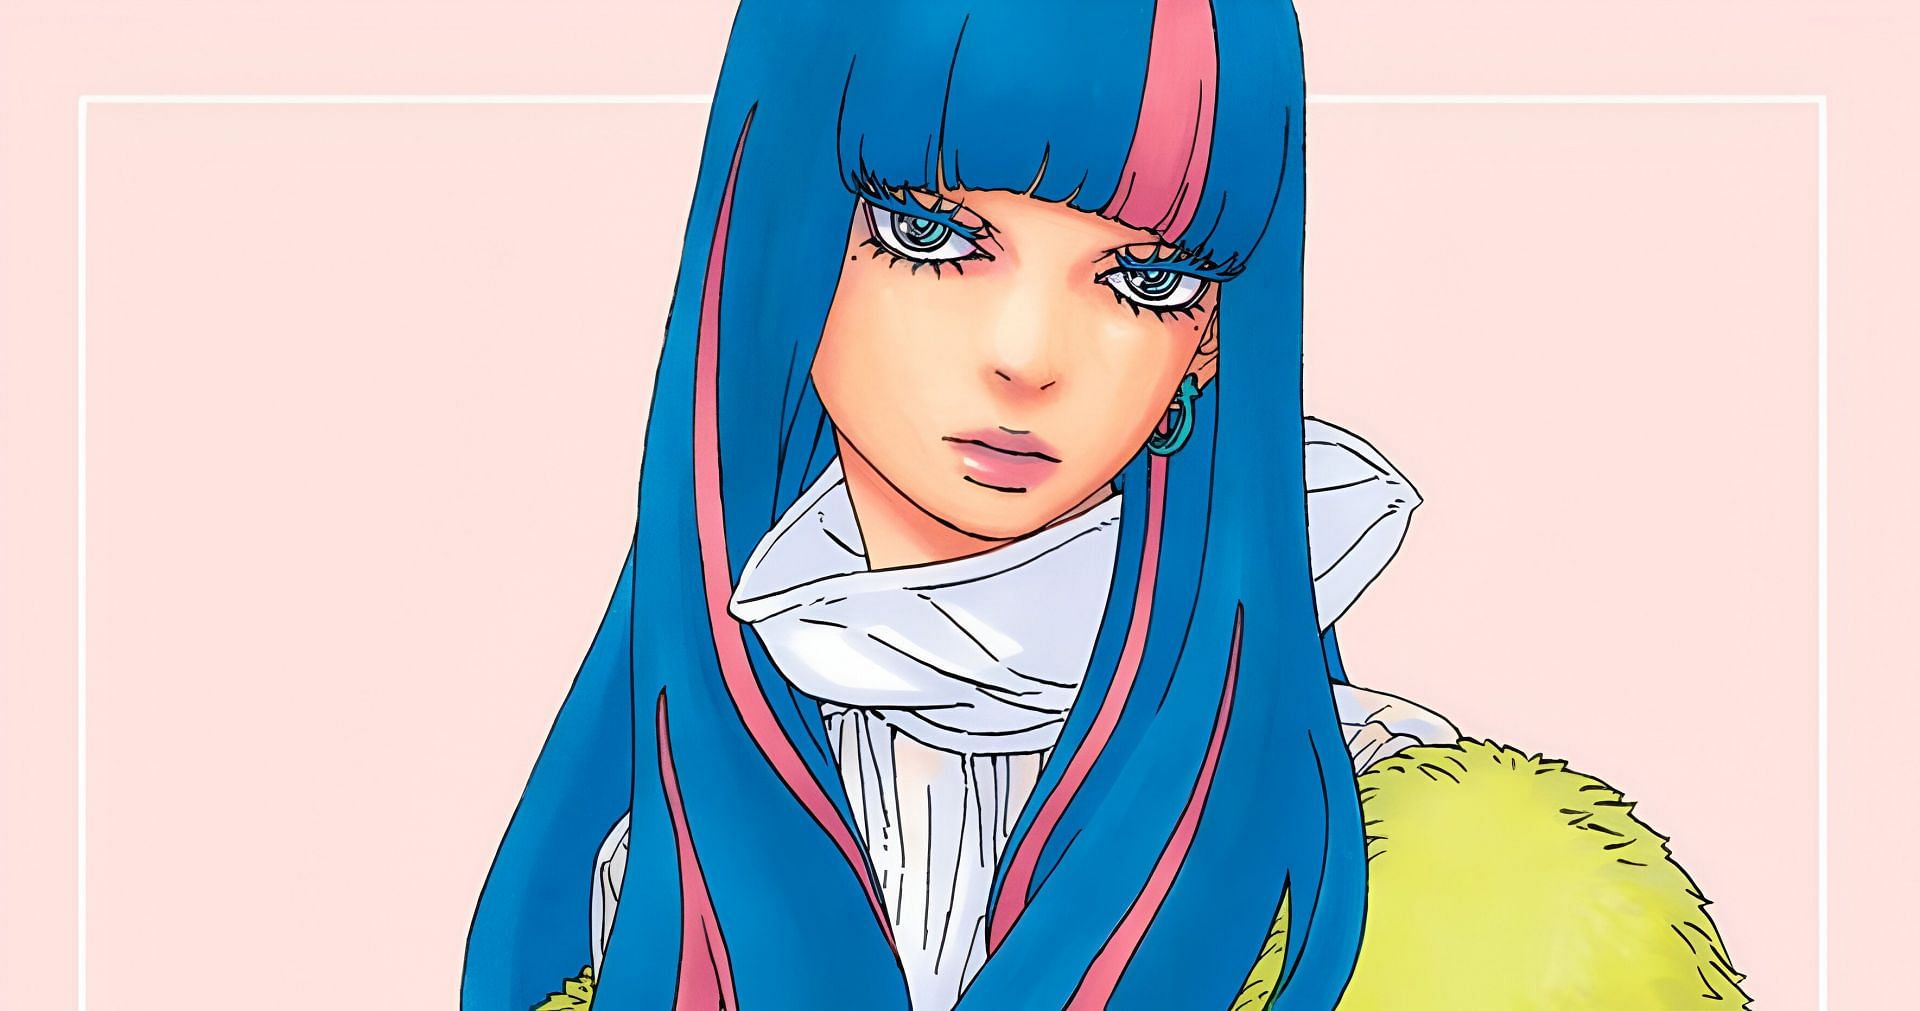 Eida as seen in the Boruto manga (Image via Shueisha)